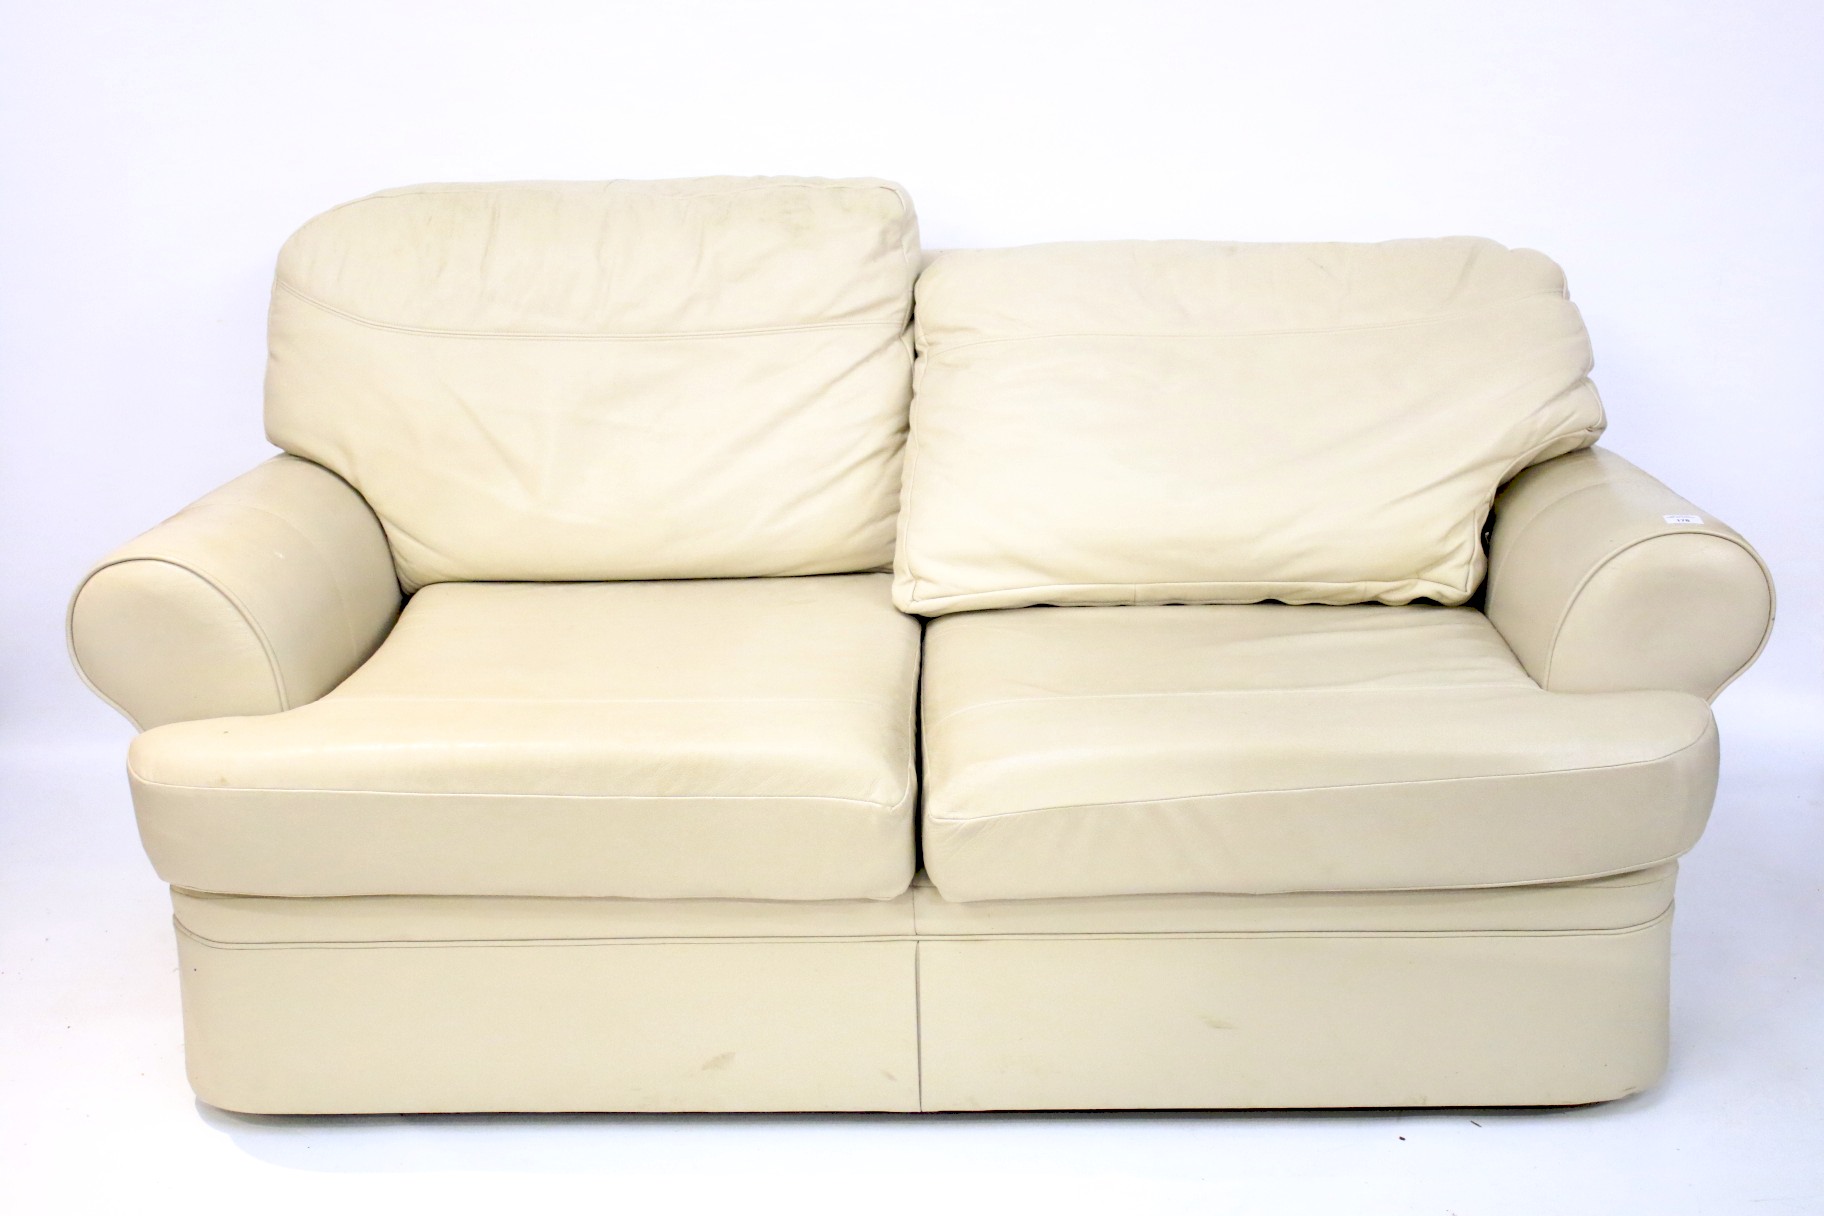 A contemporary sofa.